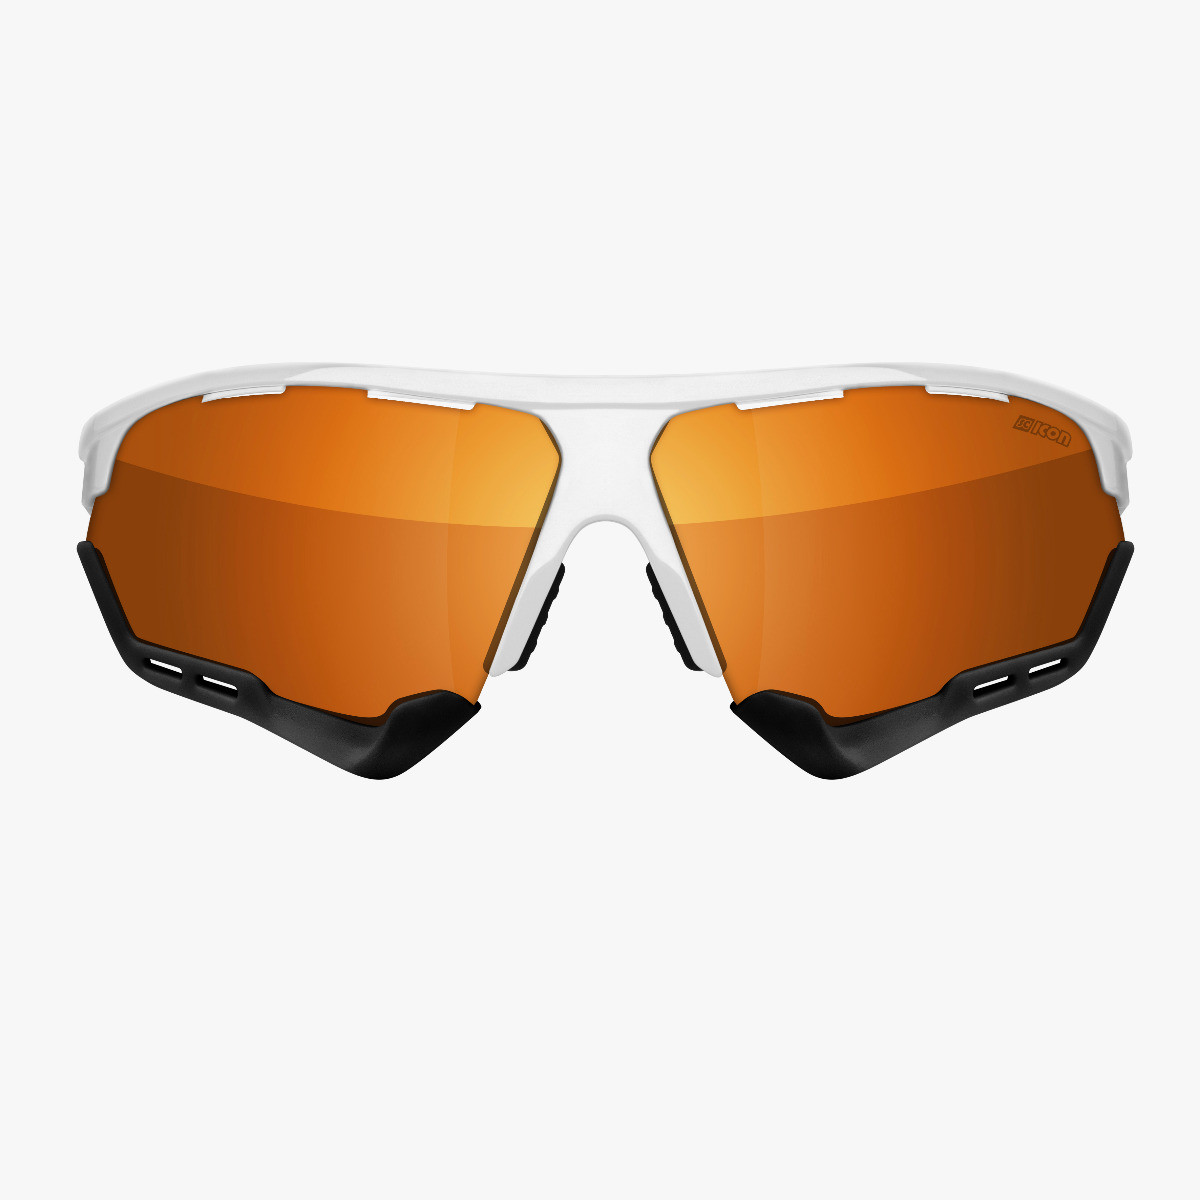 Aerocomfort performance sunglasses scnpp white frame bronze lenses EY19070401
